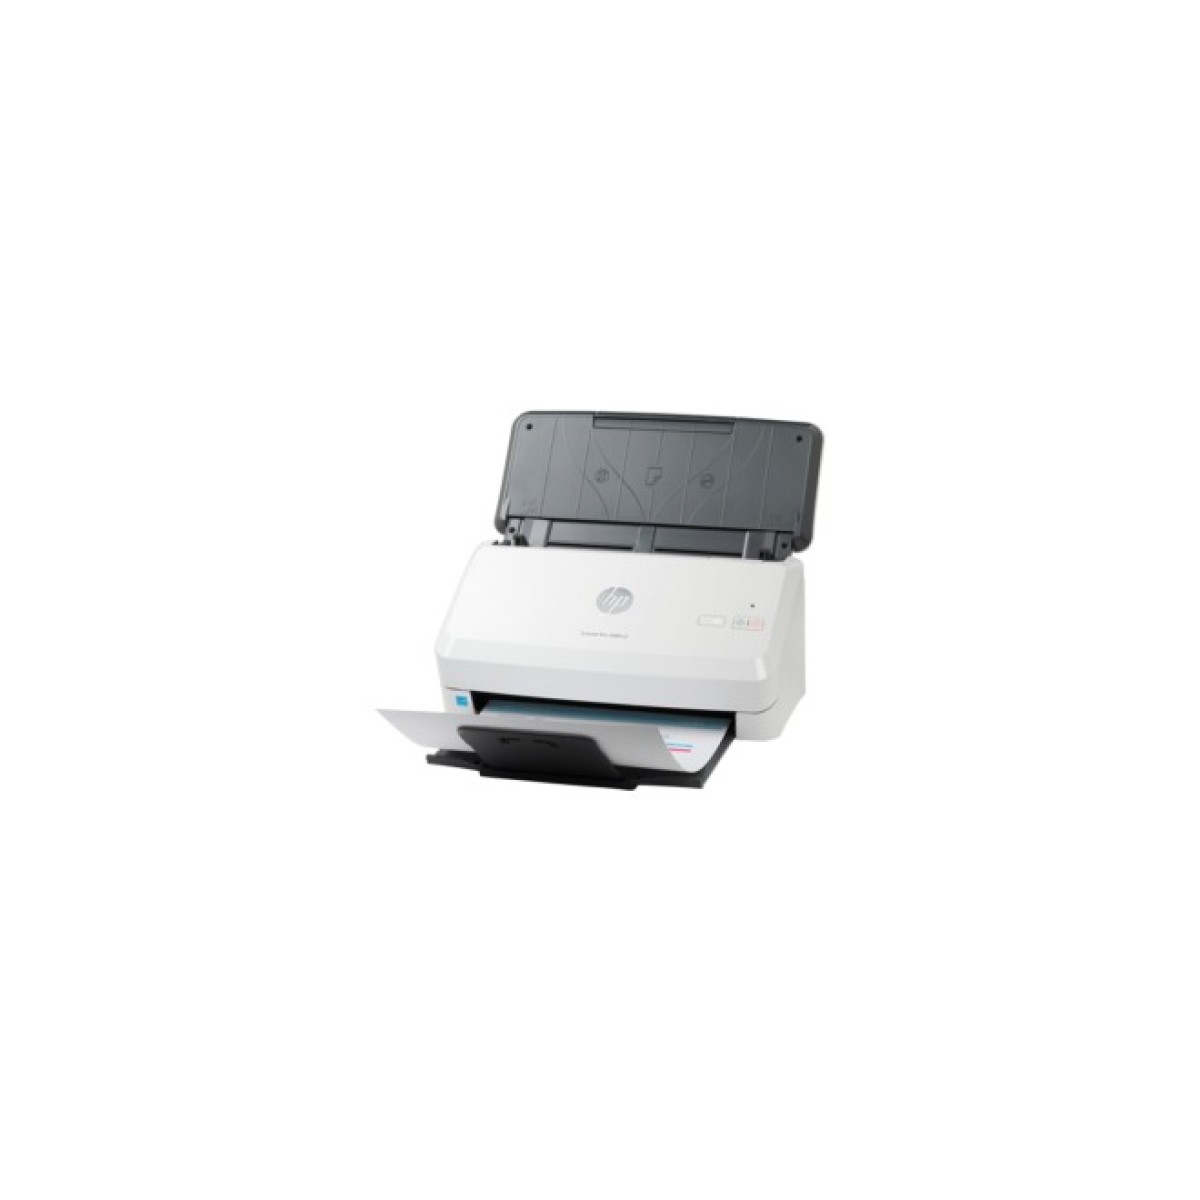 Сканер HP Scan Jet Pro 2000 S2 (6FW06A) 256_256.jpg